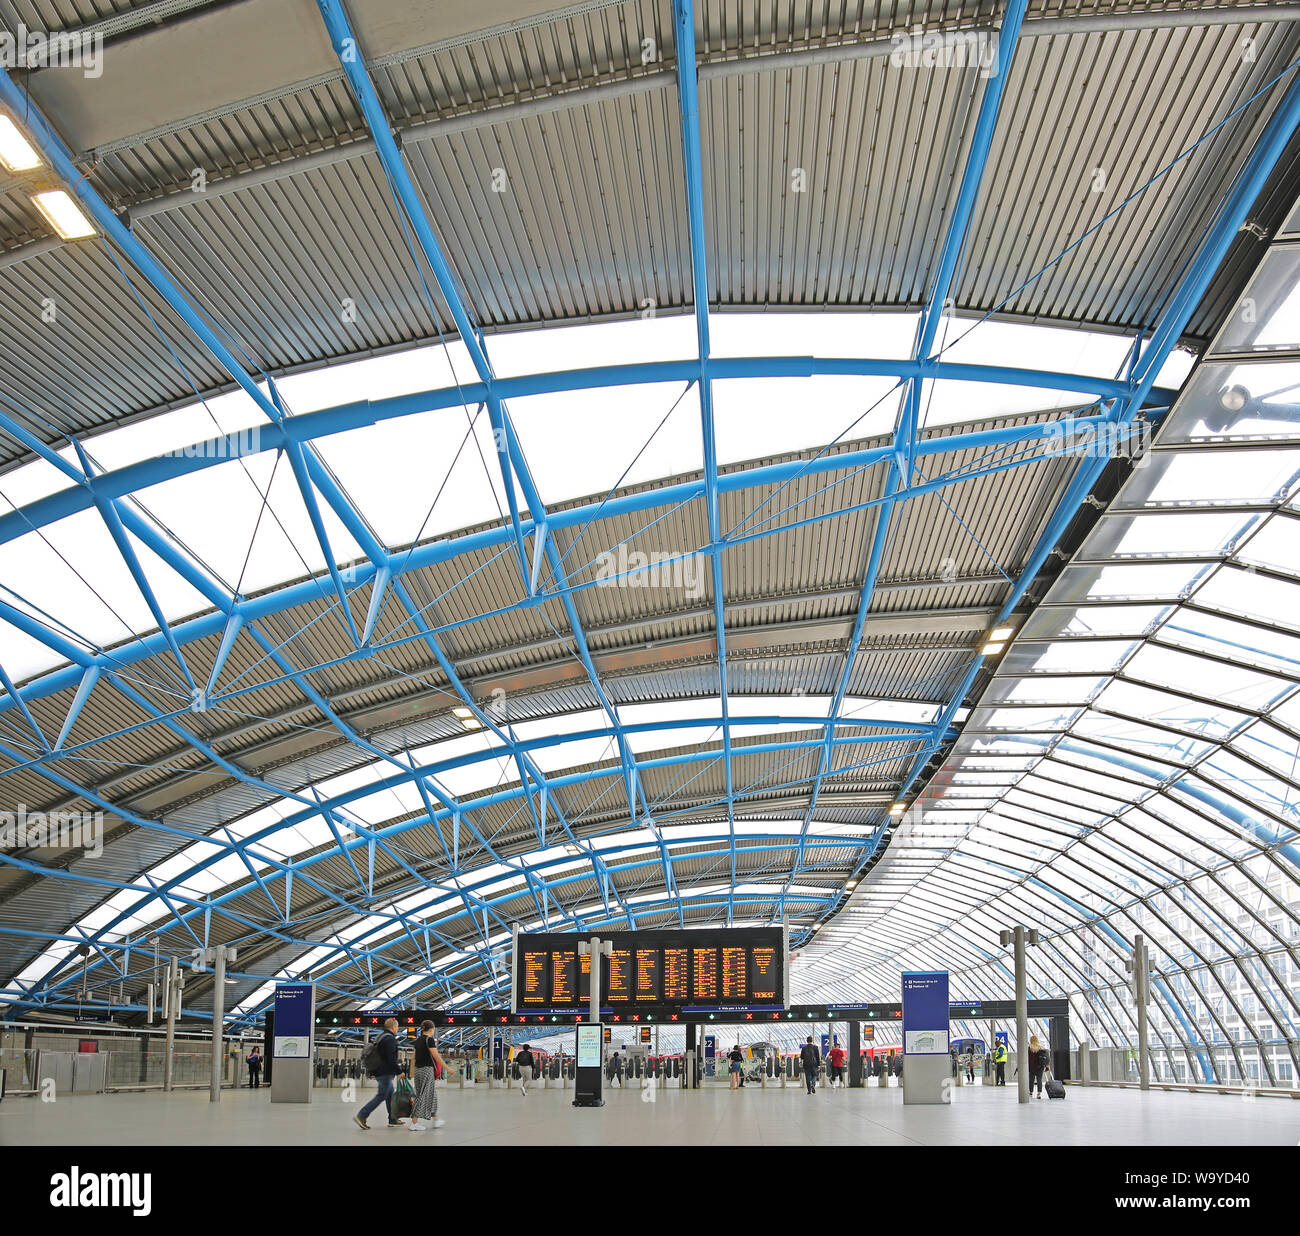 La antigua terminal de Eurostar en la estación Waterloo de Londres, Reino Unido, reabrió sus puertas en mayo de 2019 como plataformas 20-24 para trenes locales de ferrocarril del sudoeste. Foto de stock